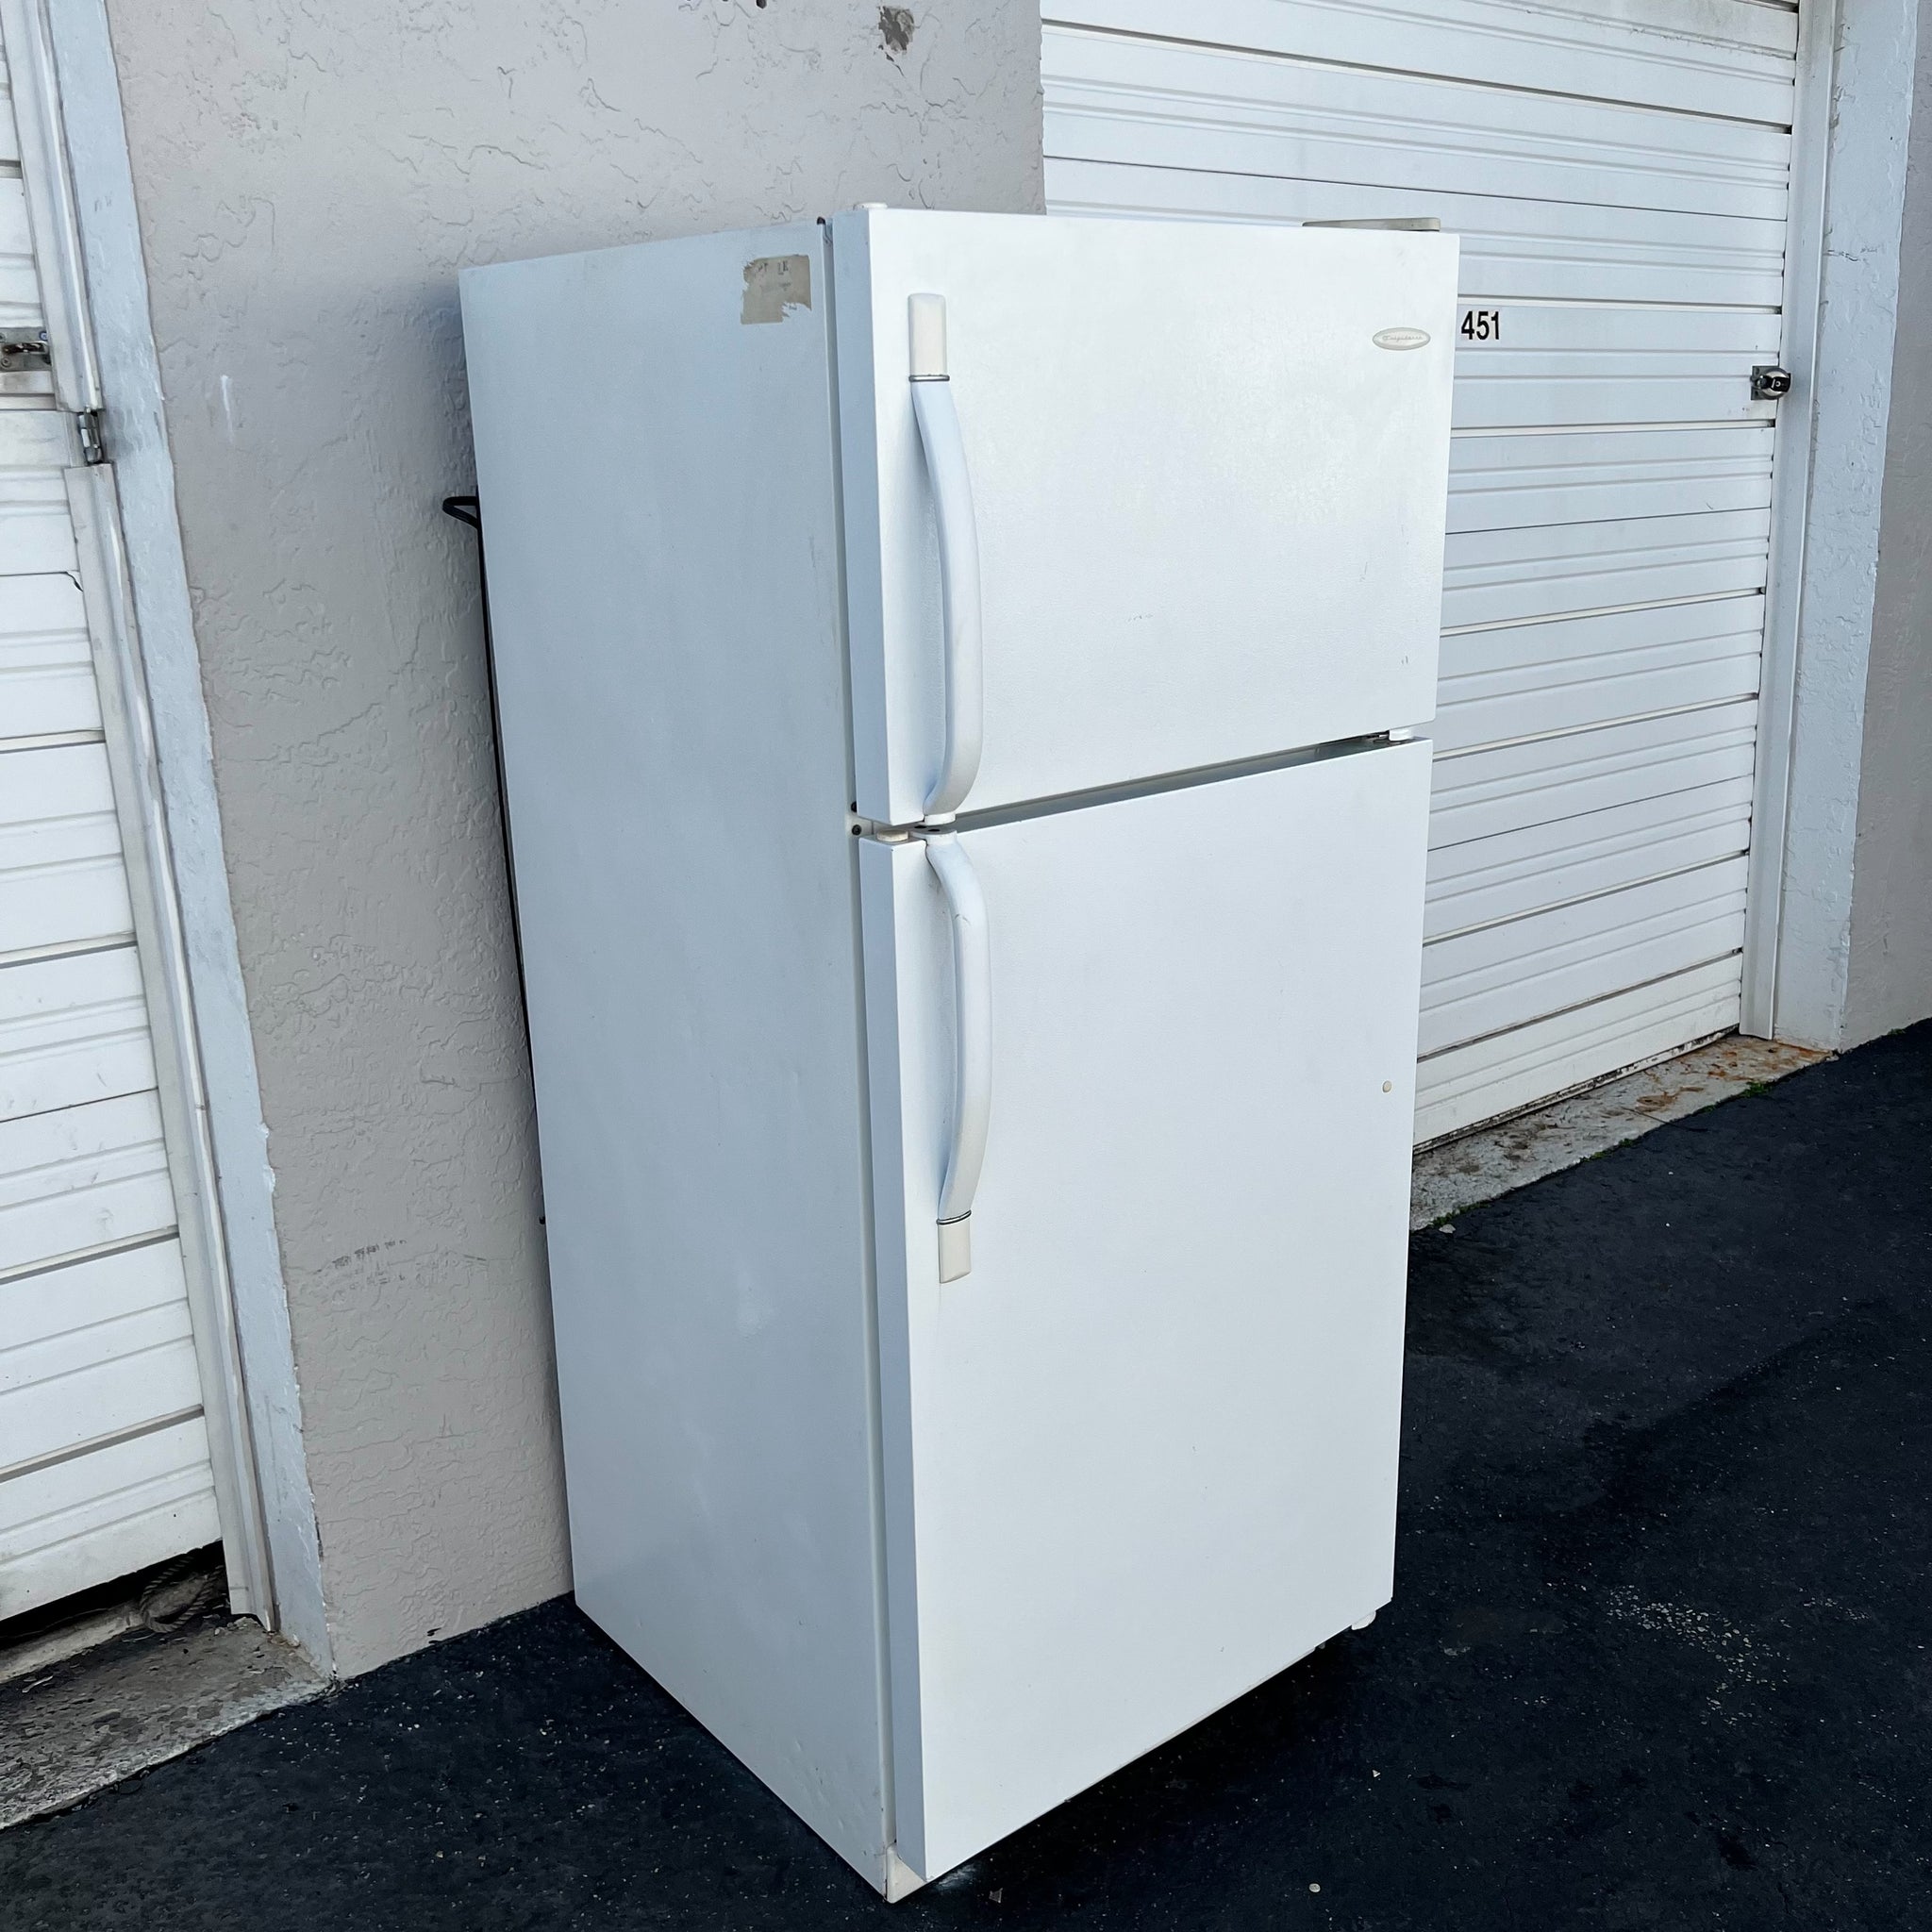 Frigidaire Top and Bottom Refrigerator